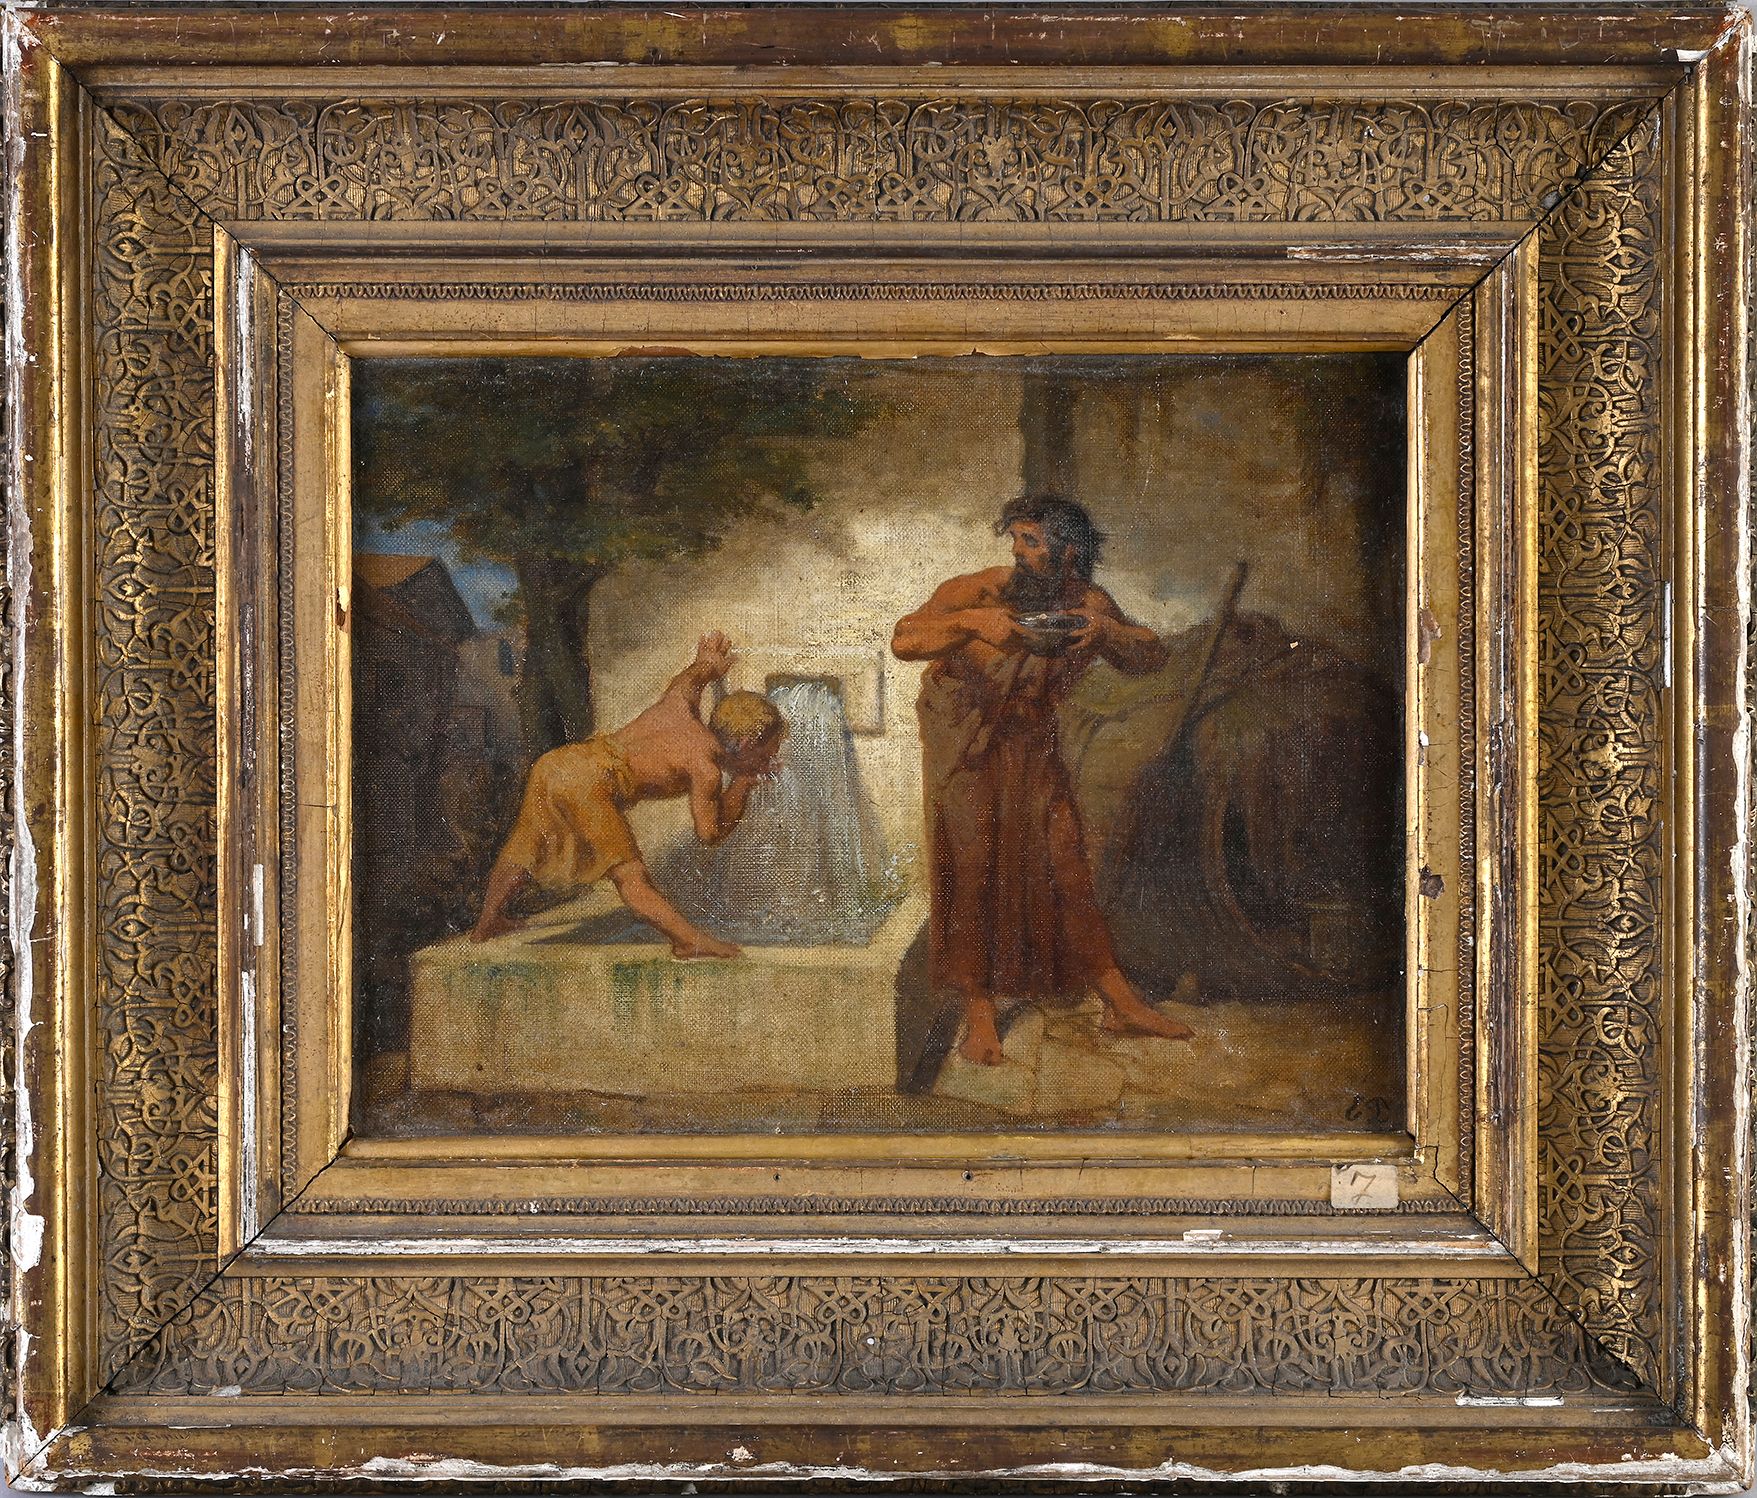 ECOLE du XIXème SIECLE 在喷泉边
布面油画，右下角有ED的首字母
H.24 cm - W 32 cm